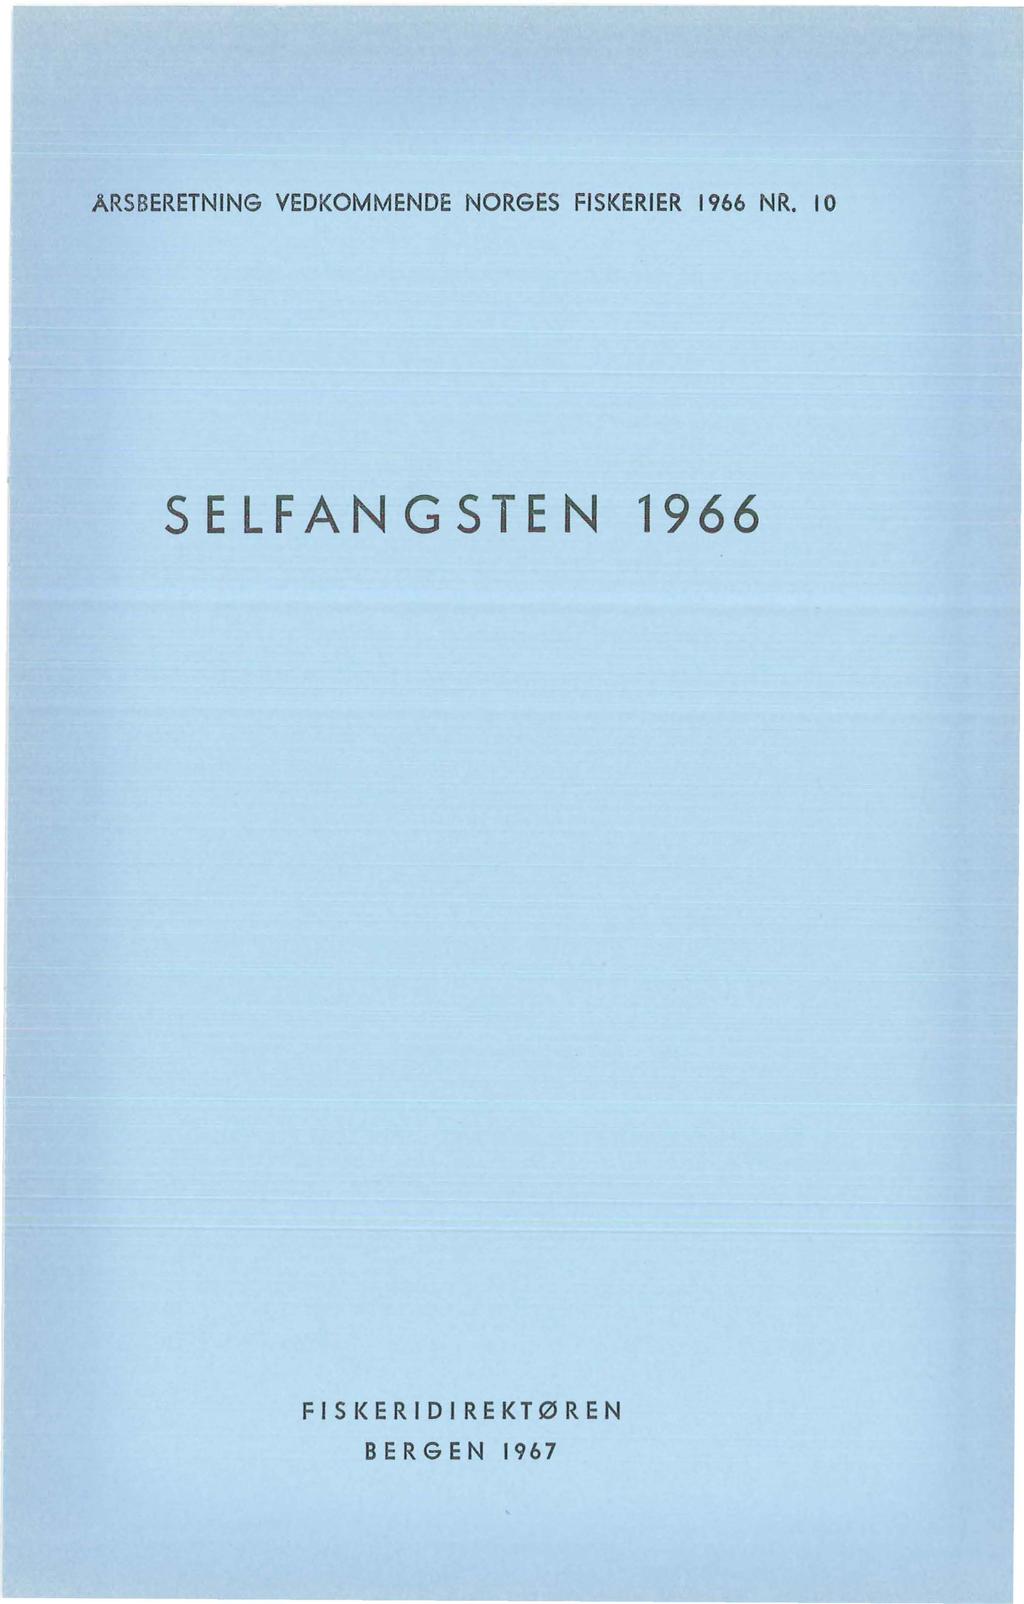 ARSBERETNING VEDKOMMENDE NORGES FISKERIER 1966 NR.